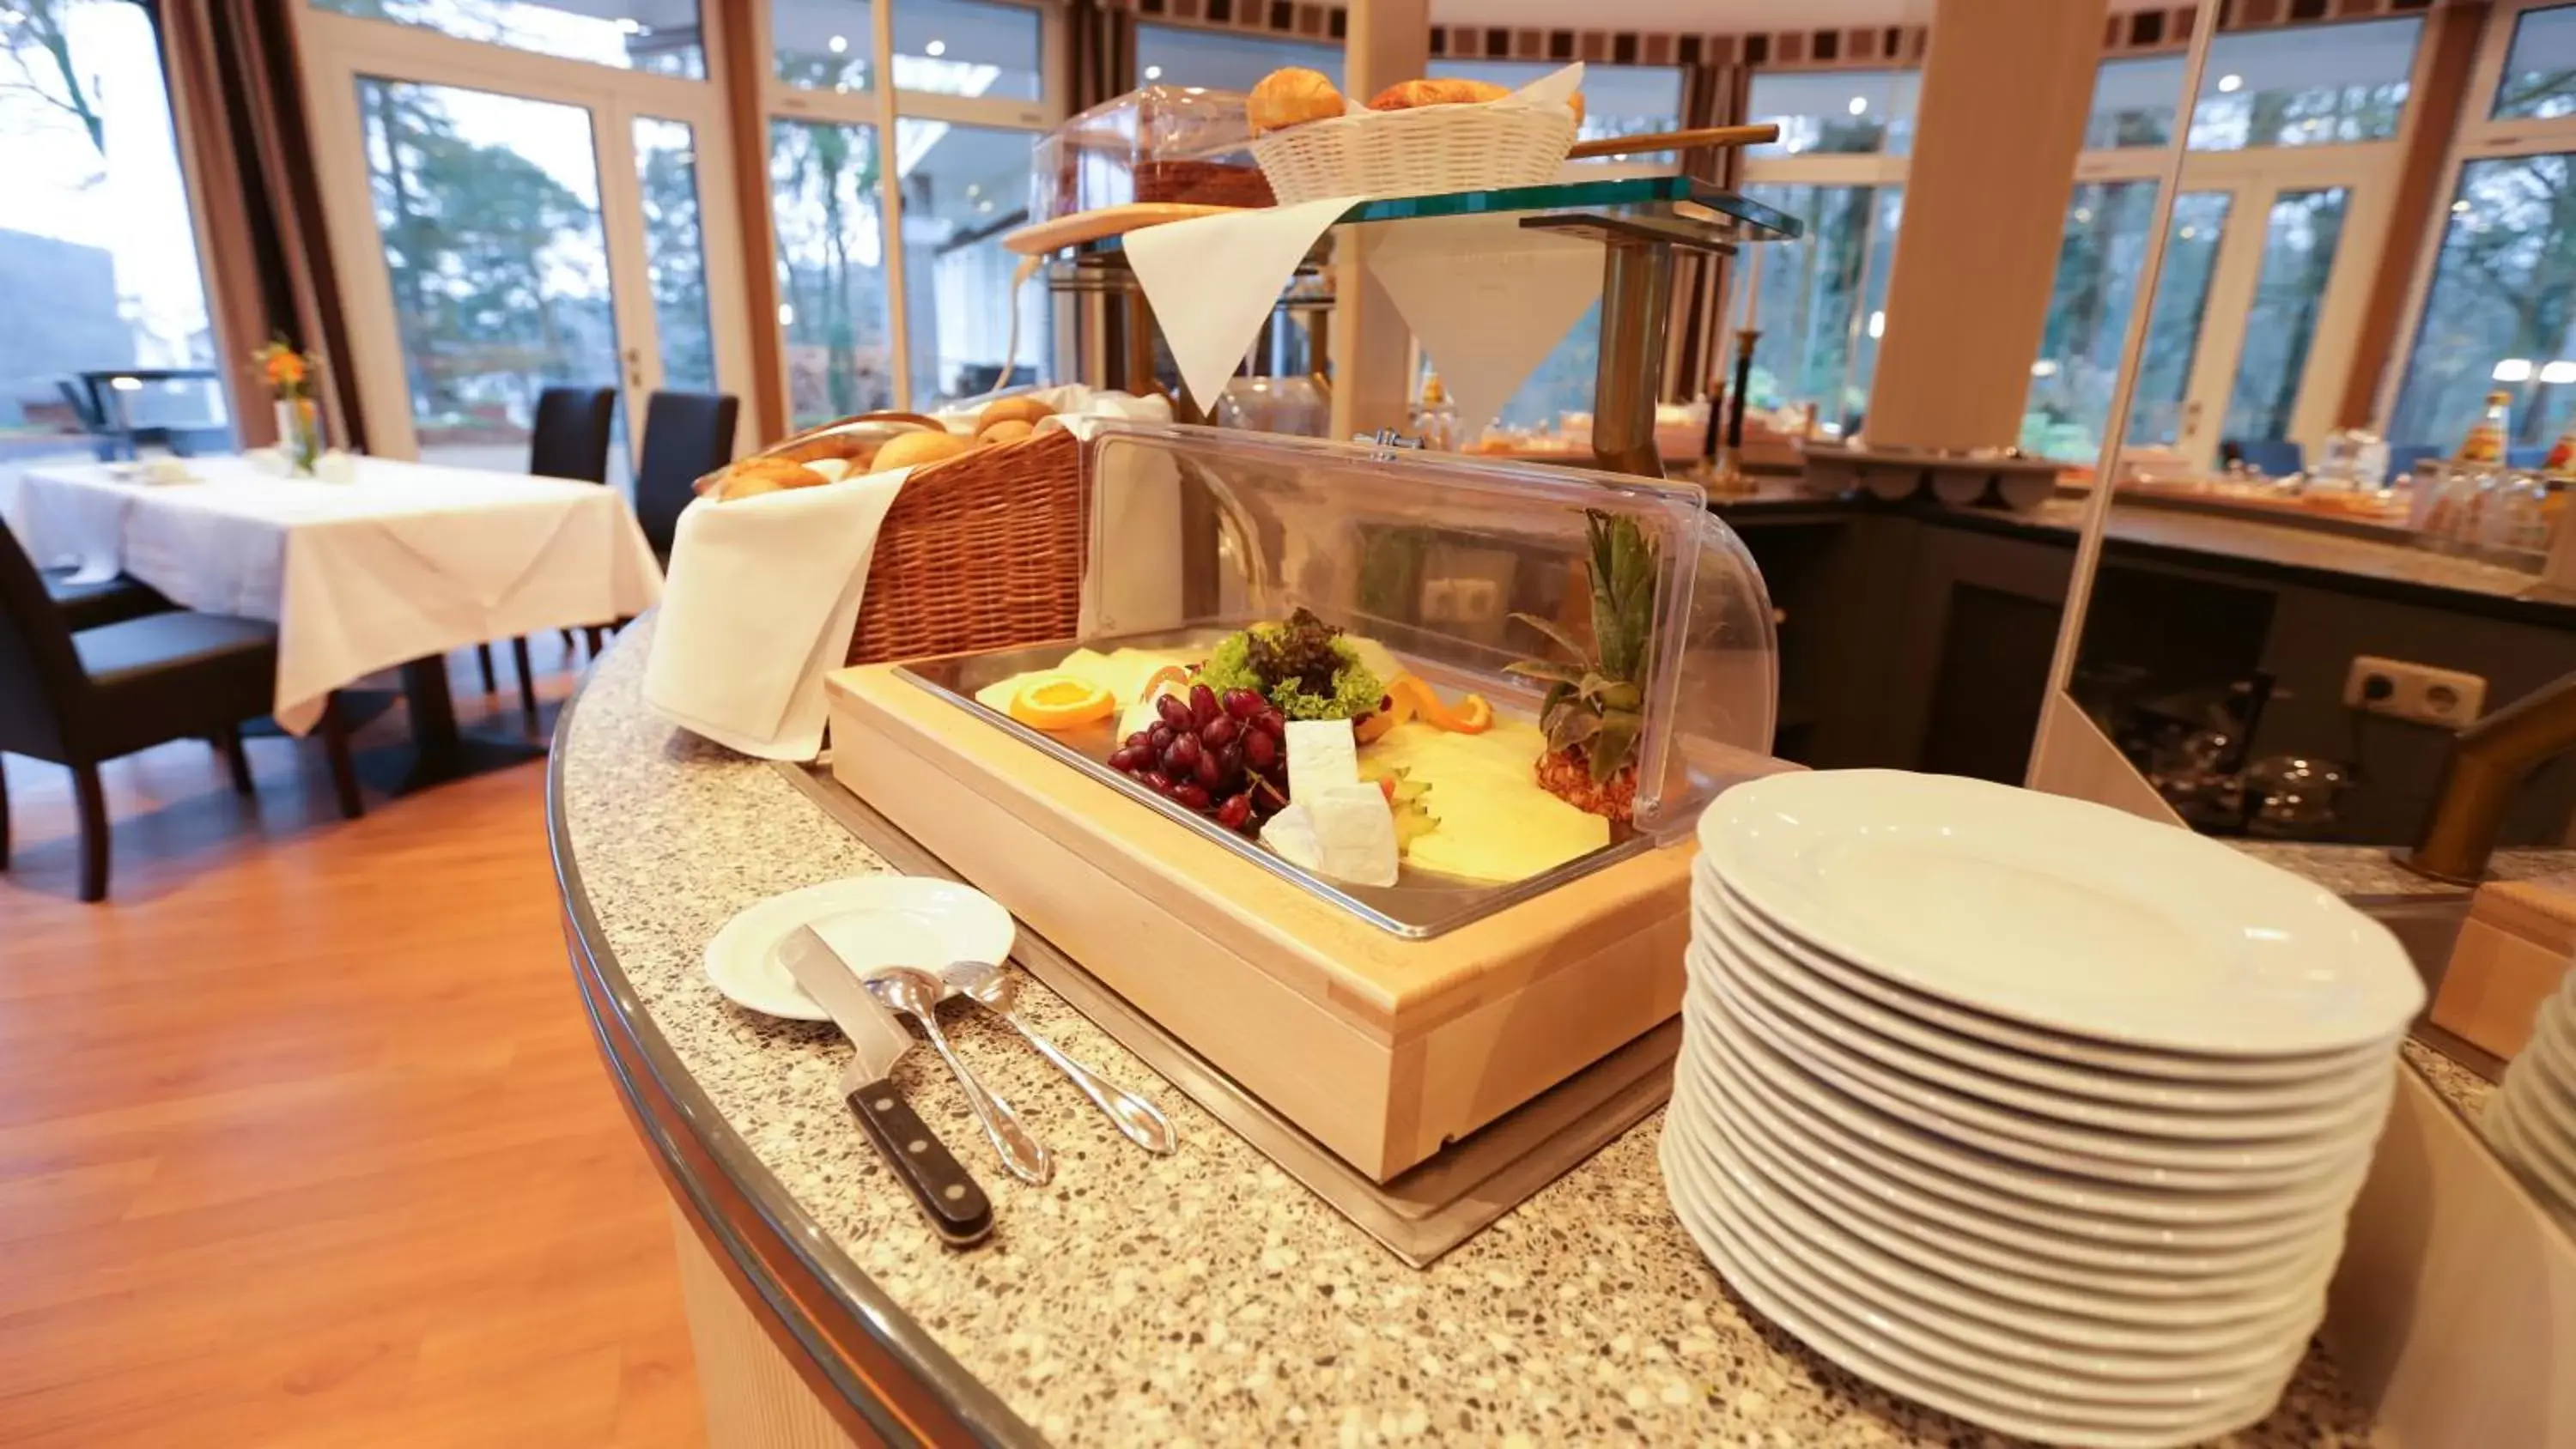 Buffet breakfast in Hotel Waldhalle